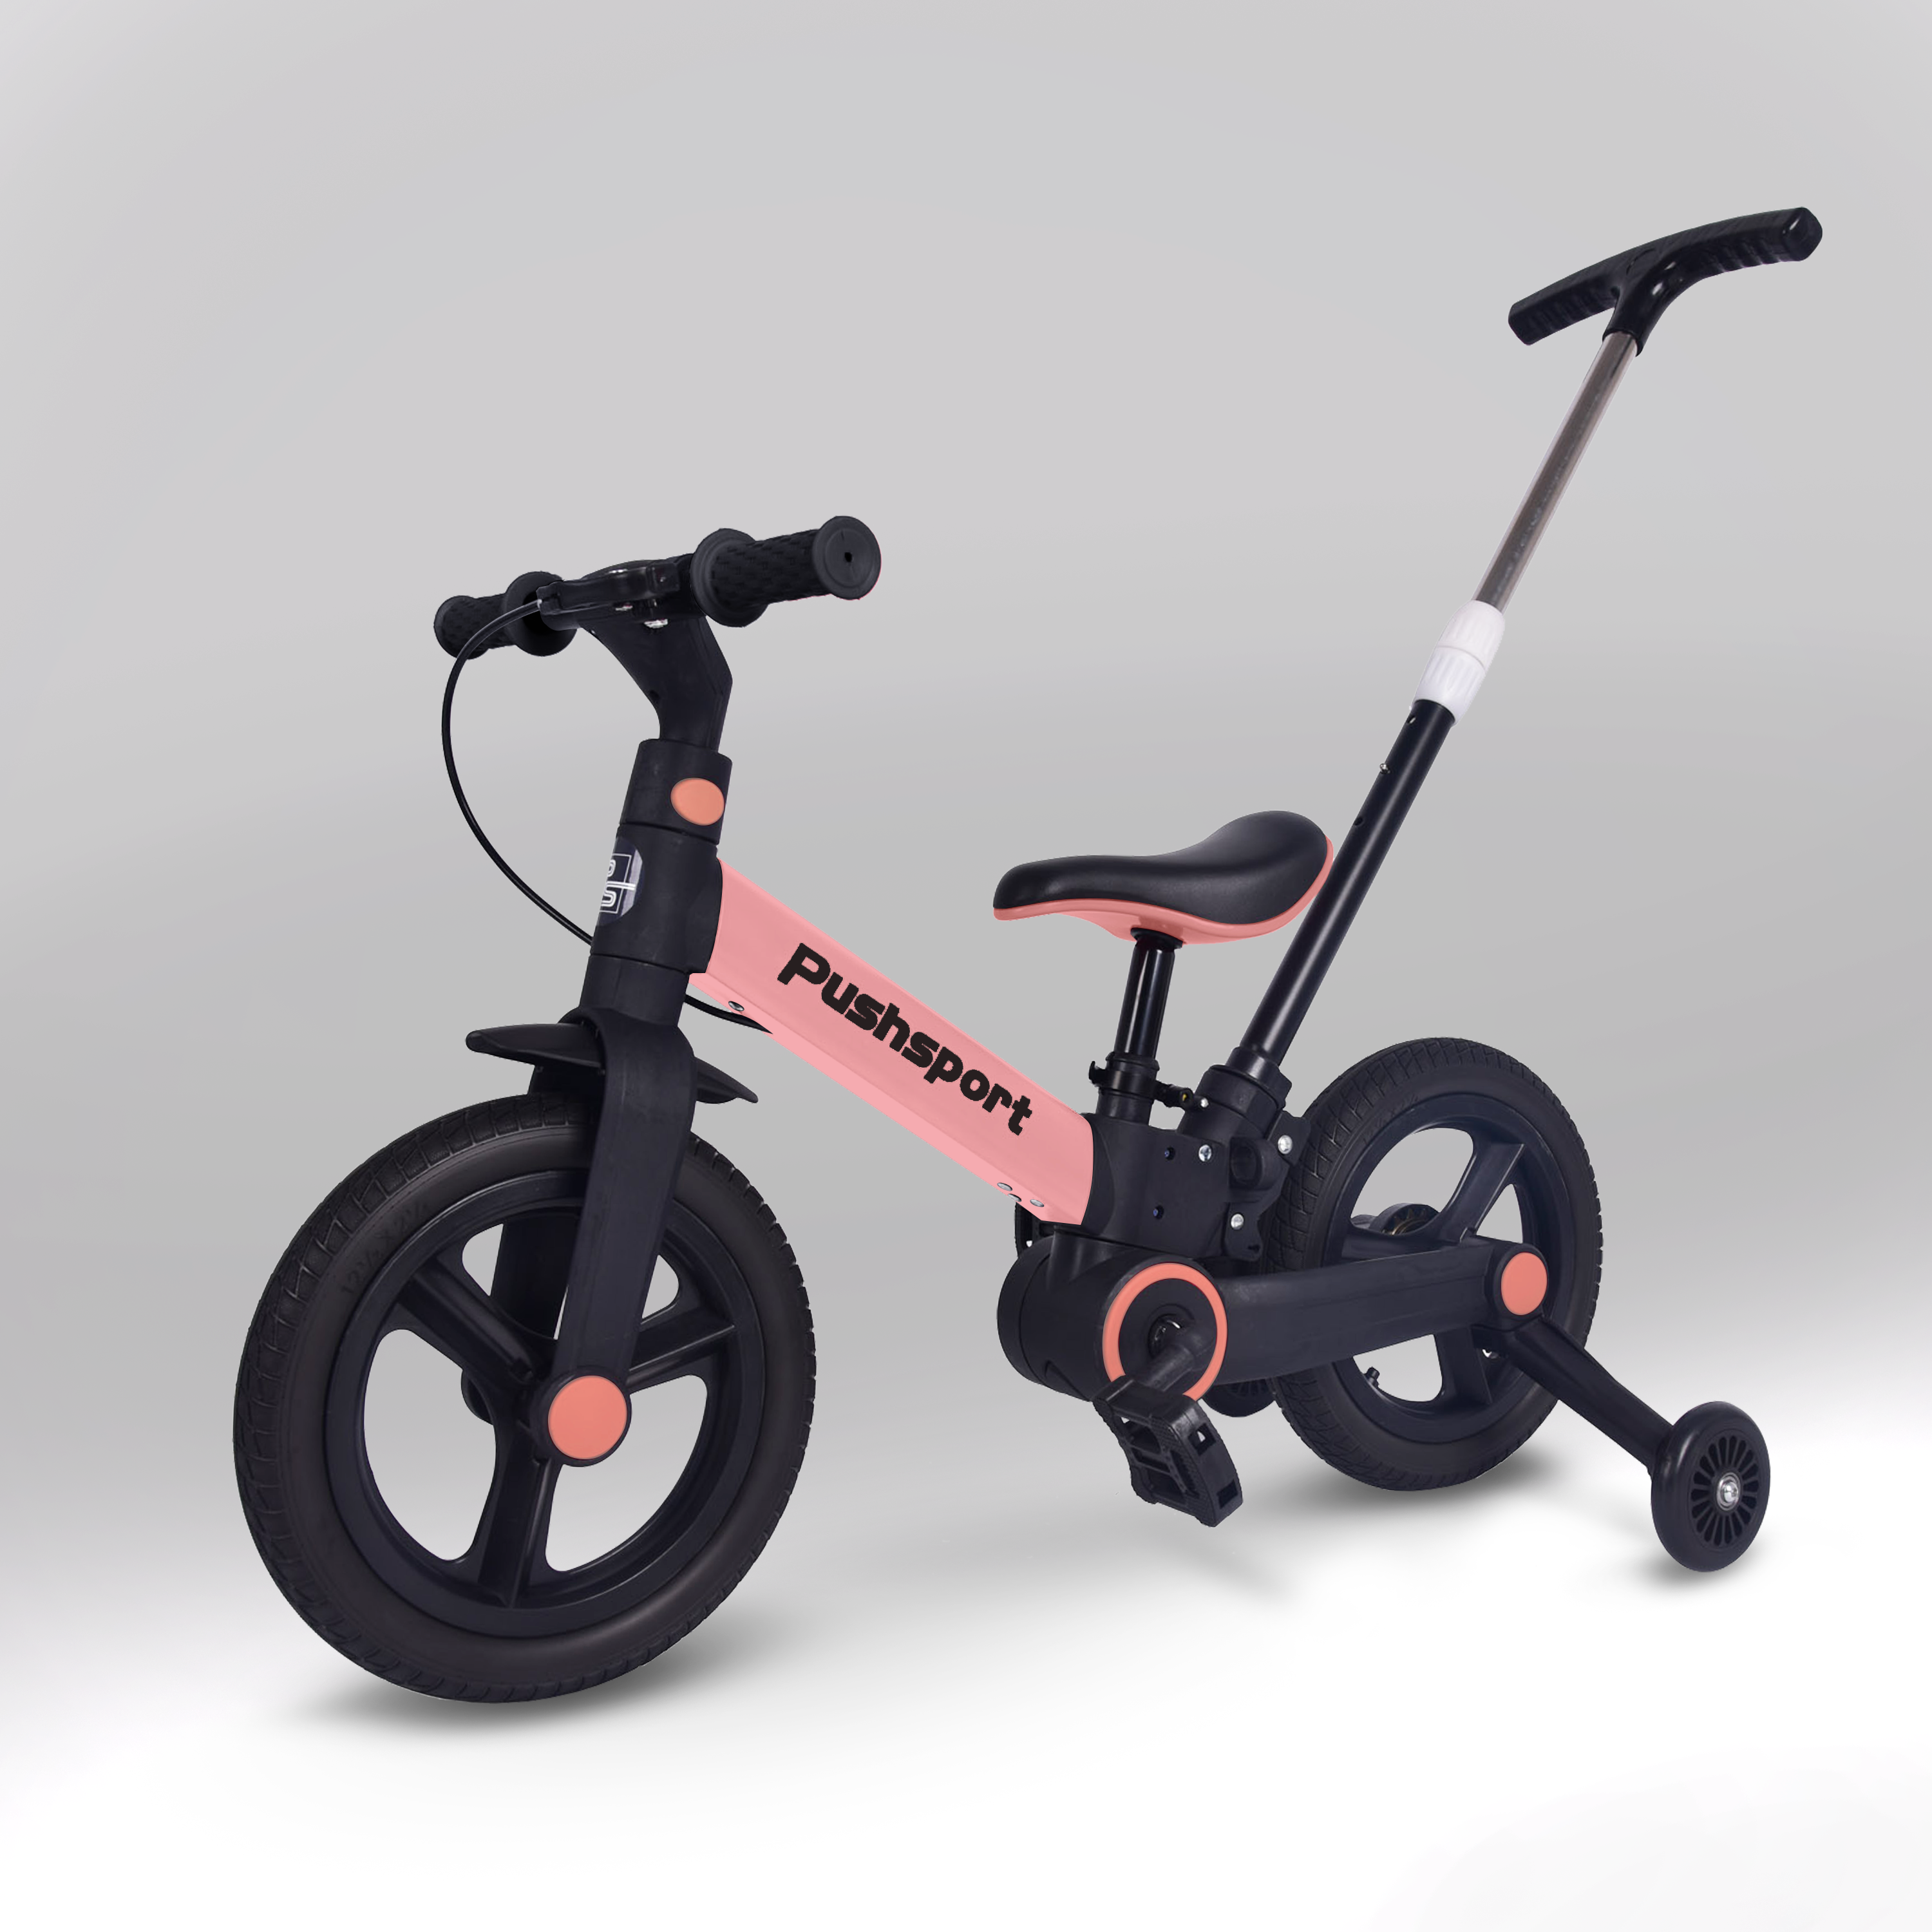 Детский двухколесный велосипед Pushsport розовый